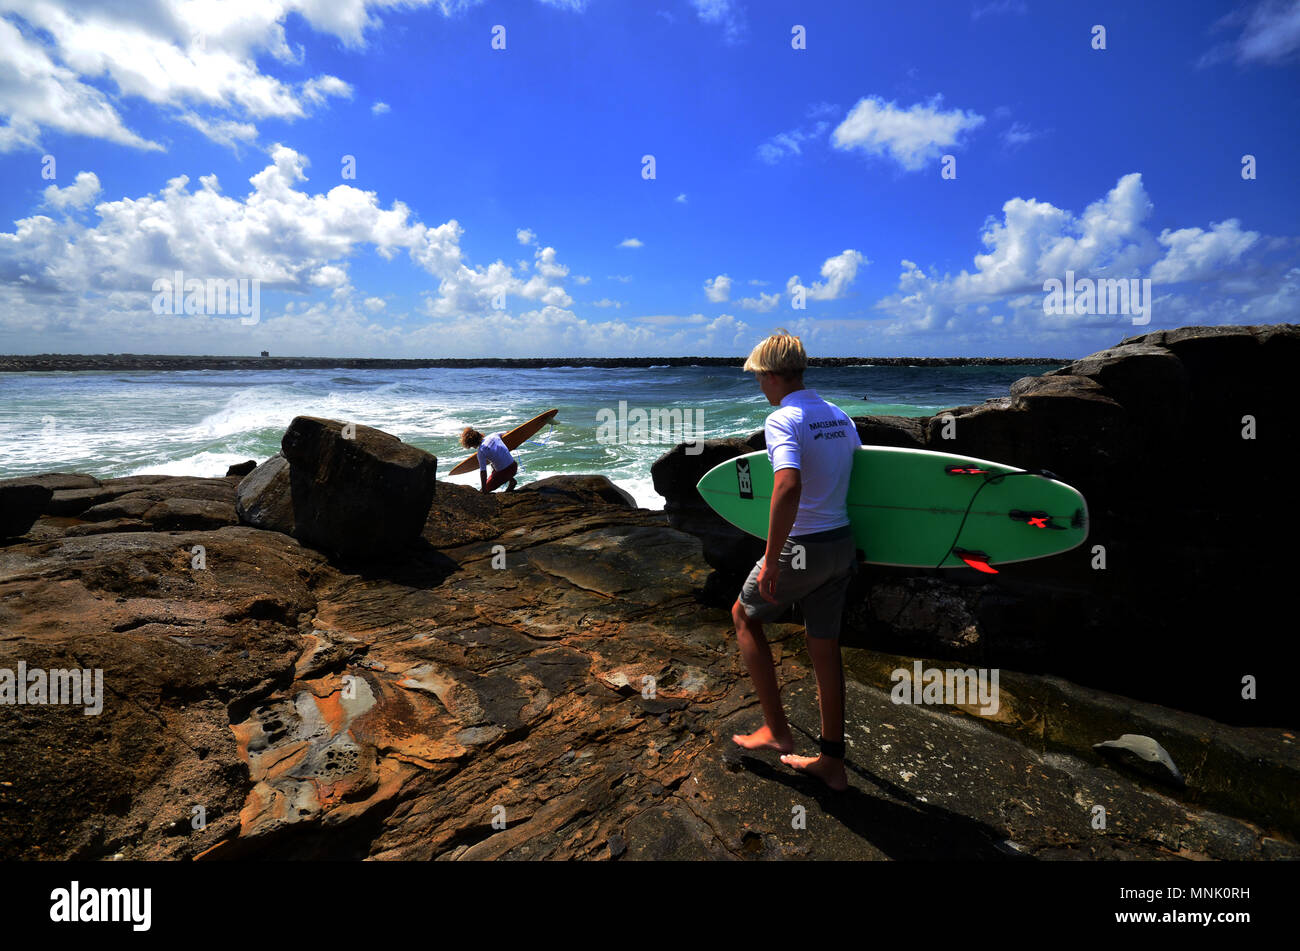 Australische High School Studenten in Uniform auf Surfen Lektion Stockfoto